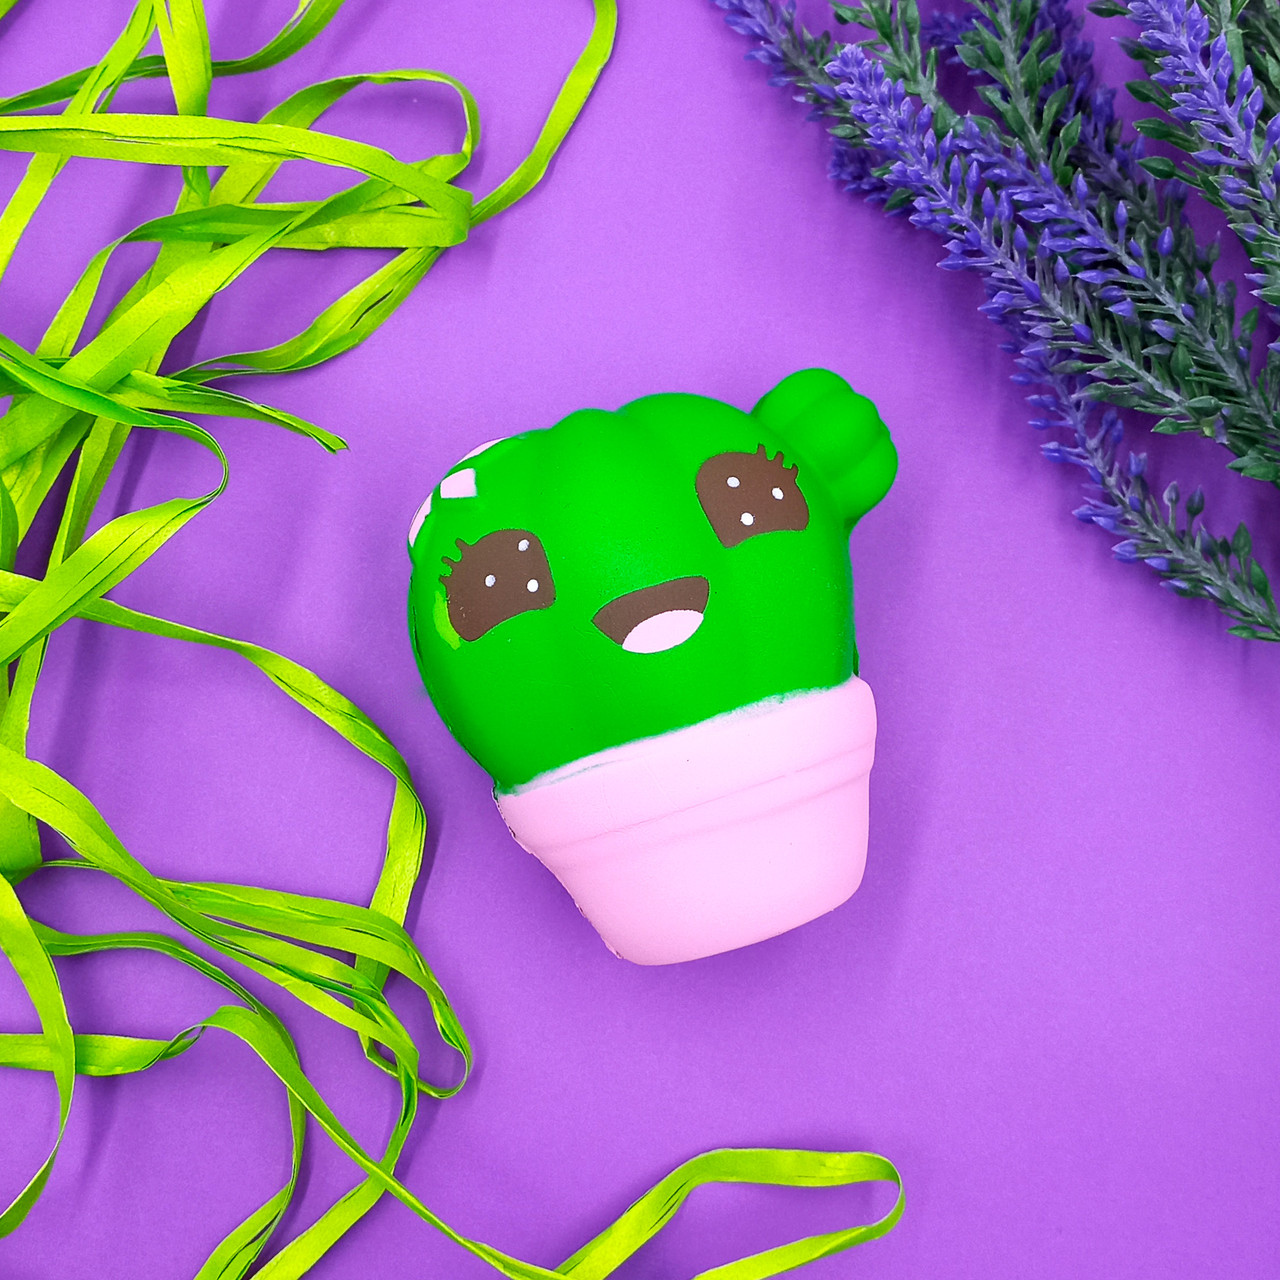 Іграшка Сквиш Squish зелений Кактус, дитяча антистрес іграшка м'яка з запахом/ароматом